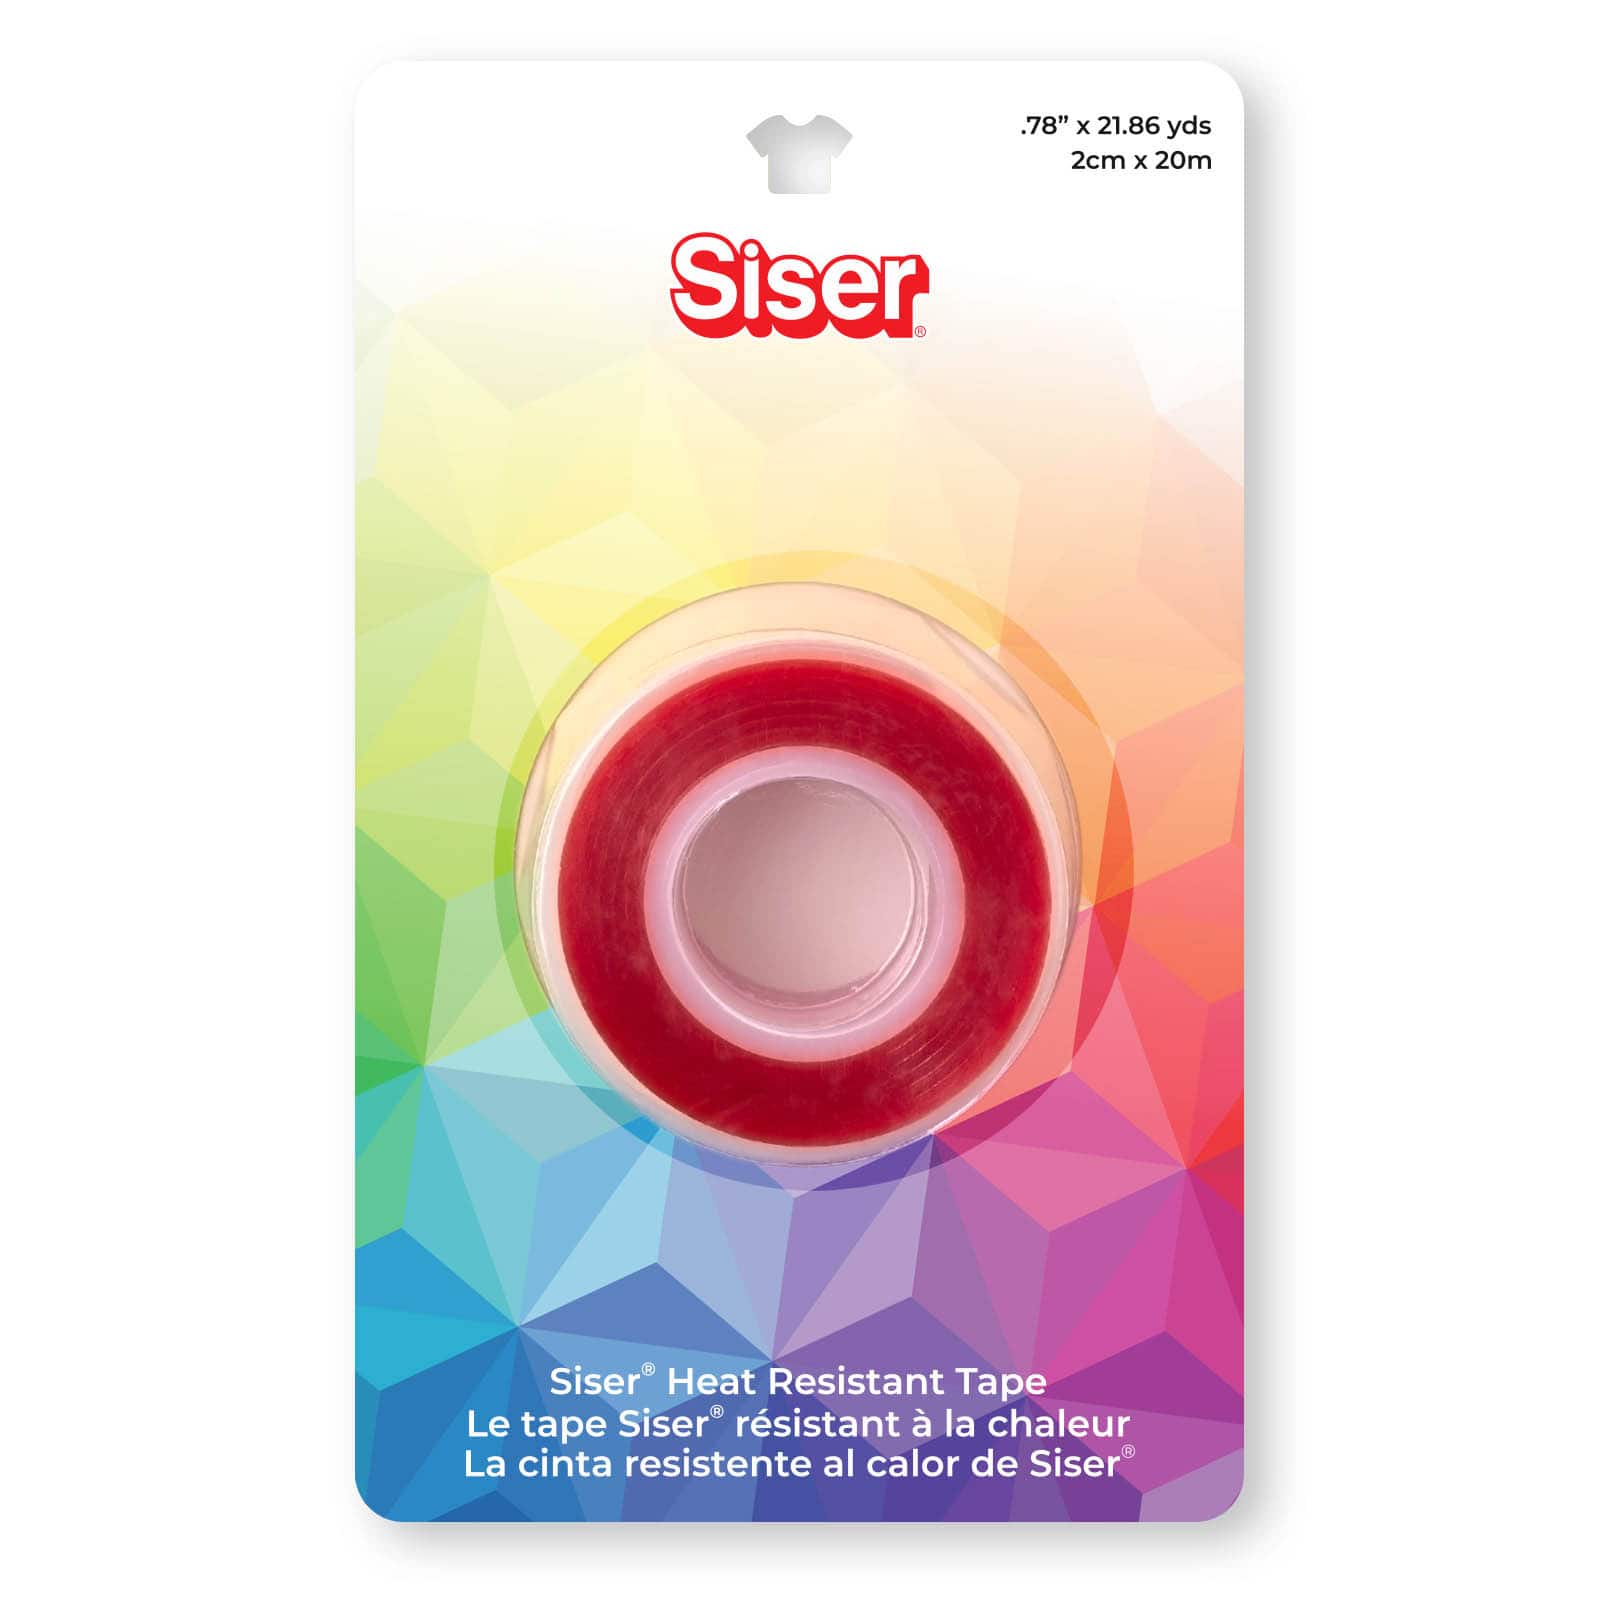 Siser 0.78 Heat Resistant Tape - 21.86 yd